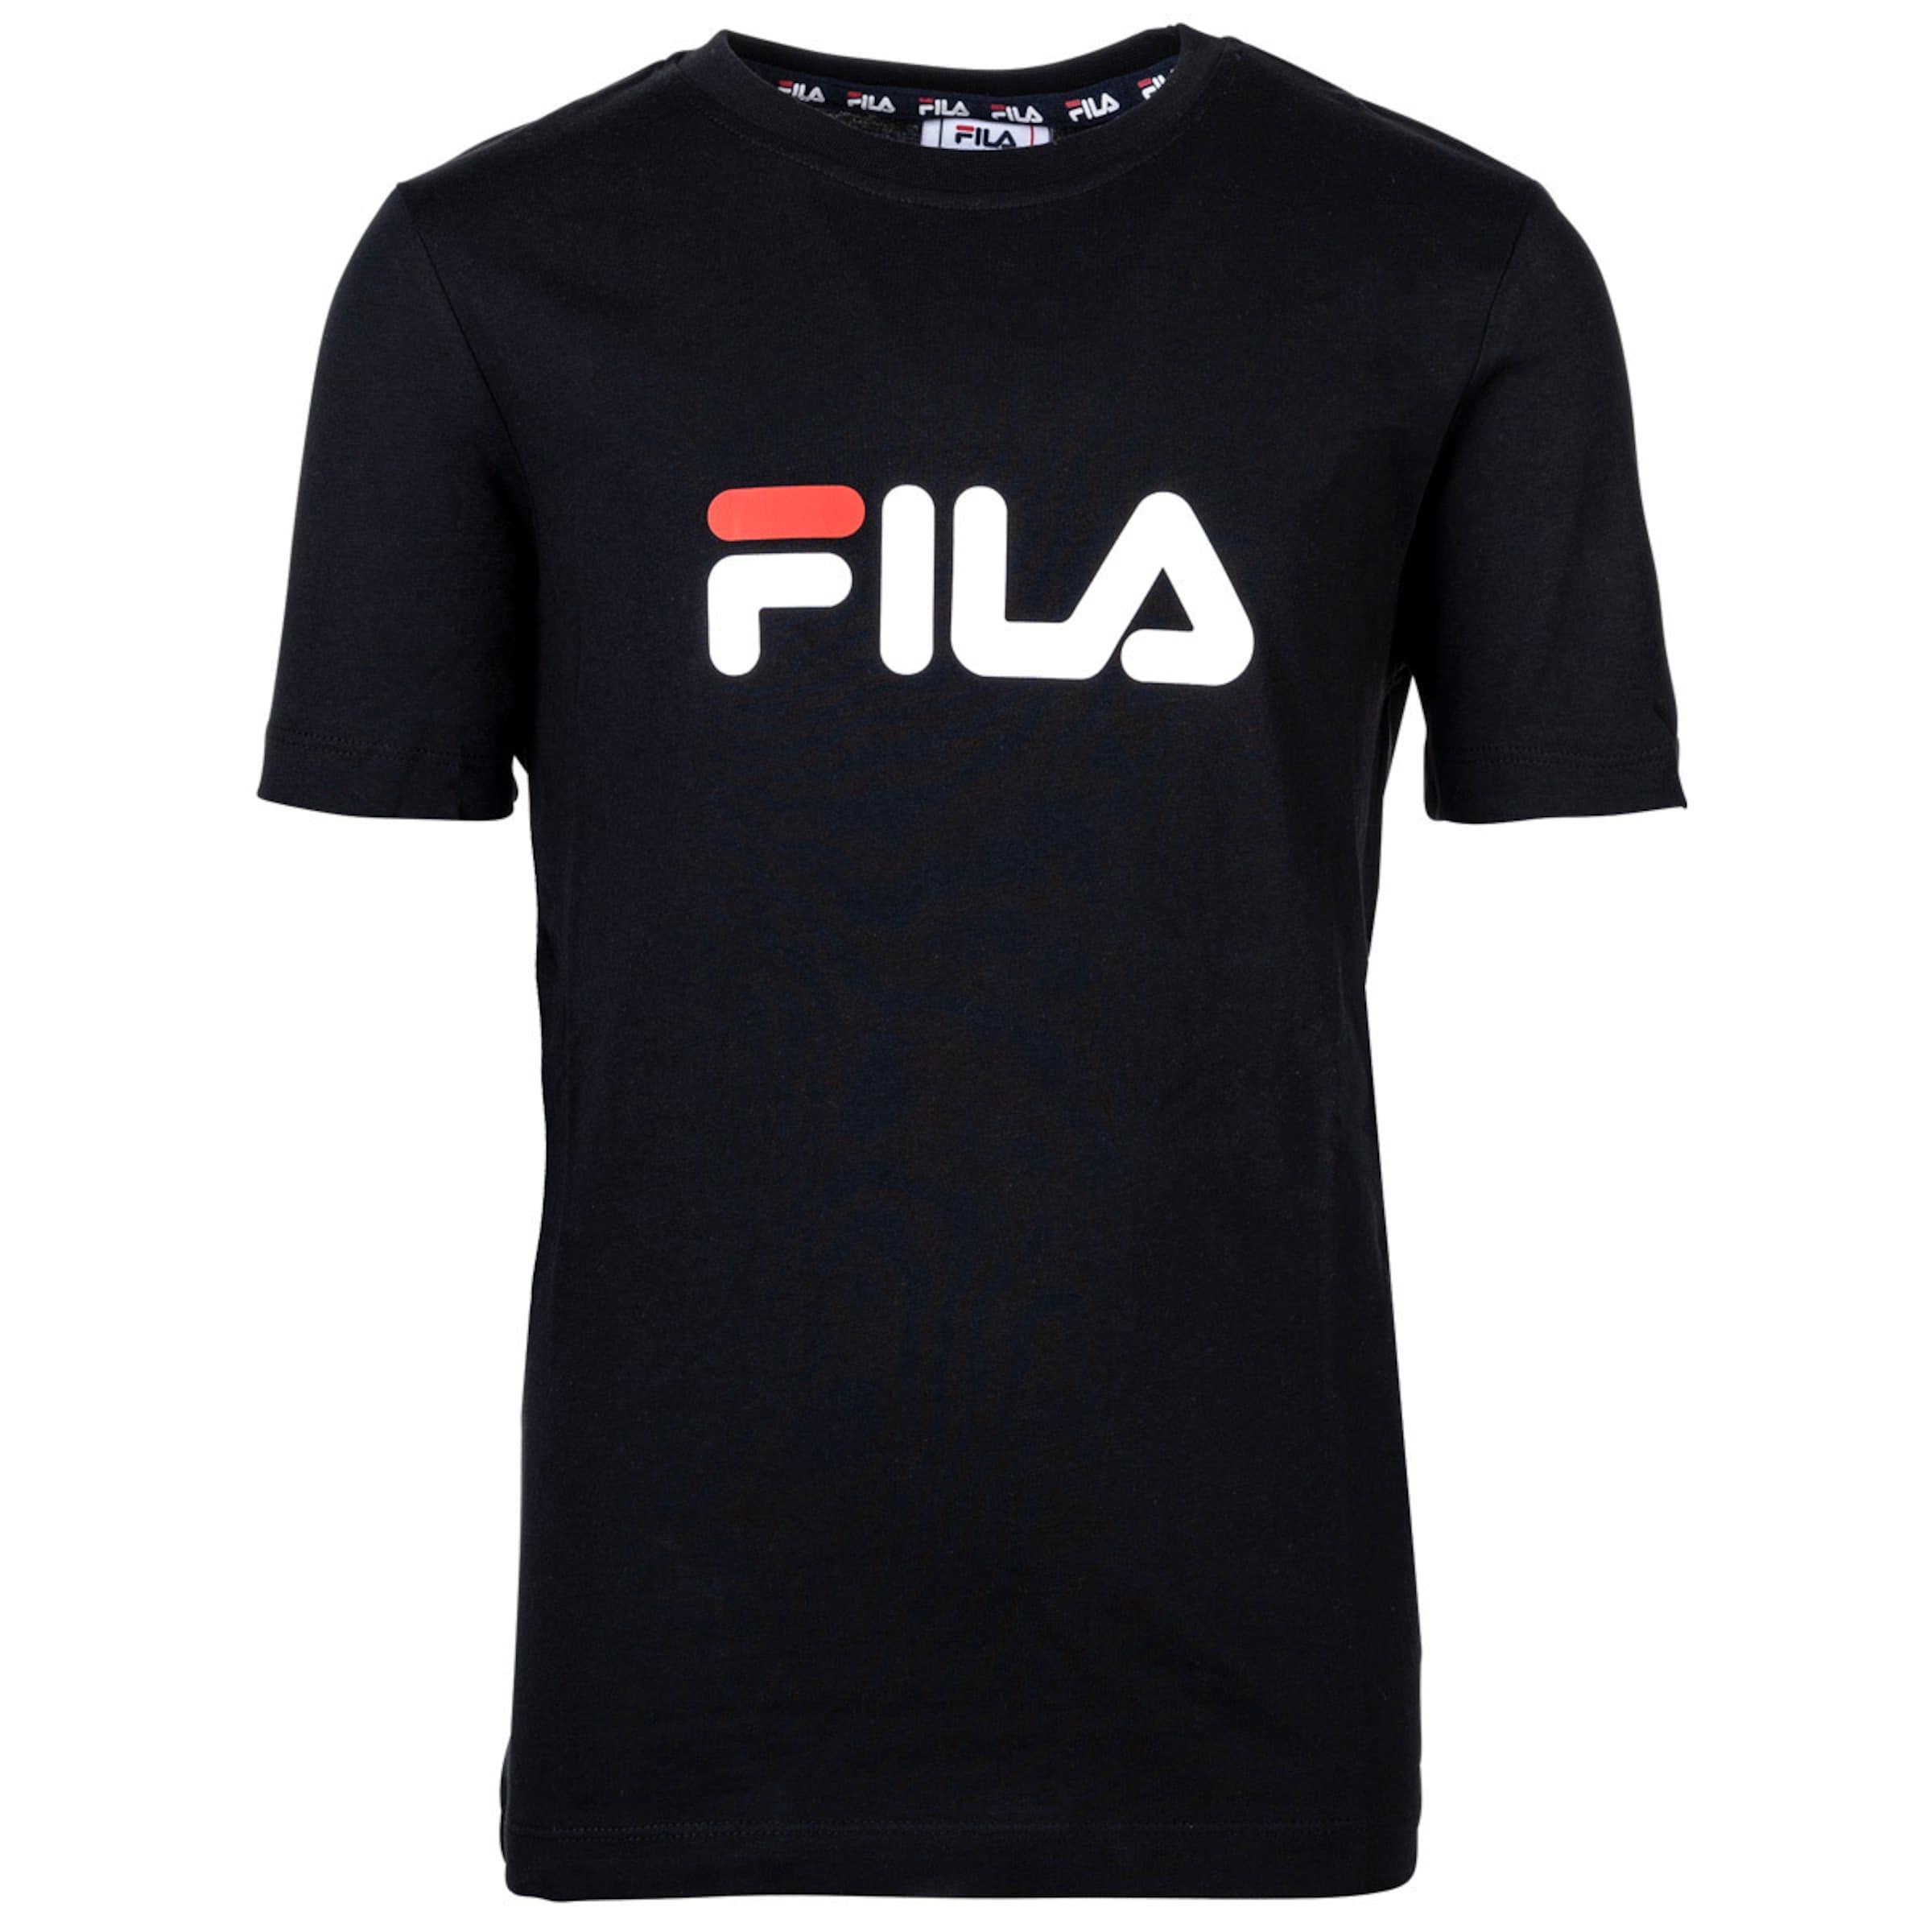 Fila T-Shirt 158-164 Noir